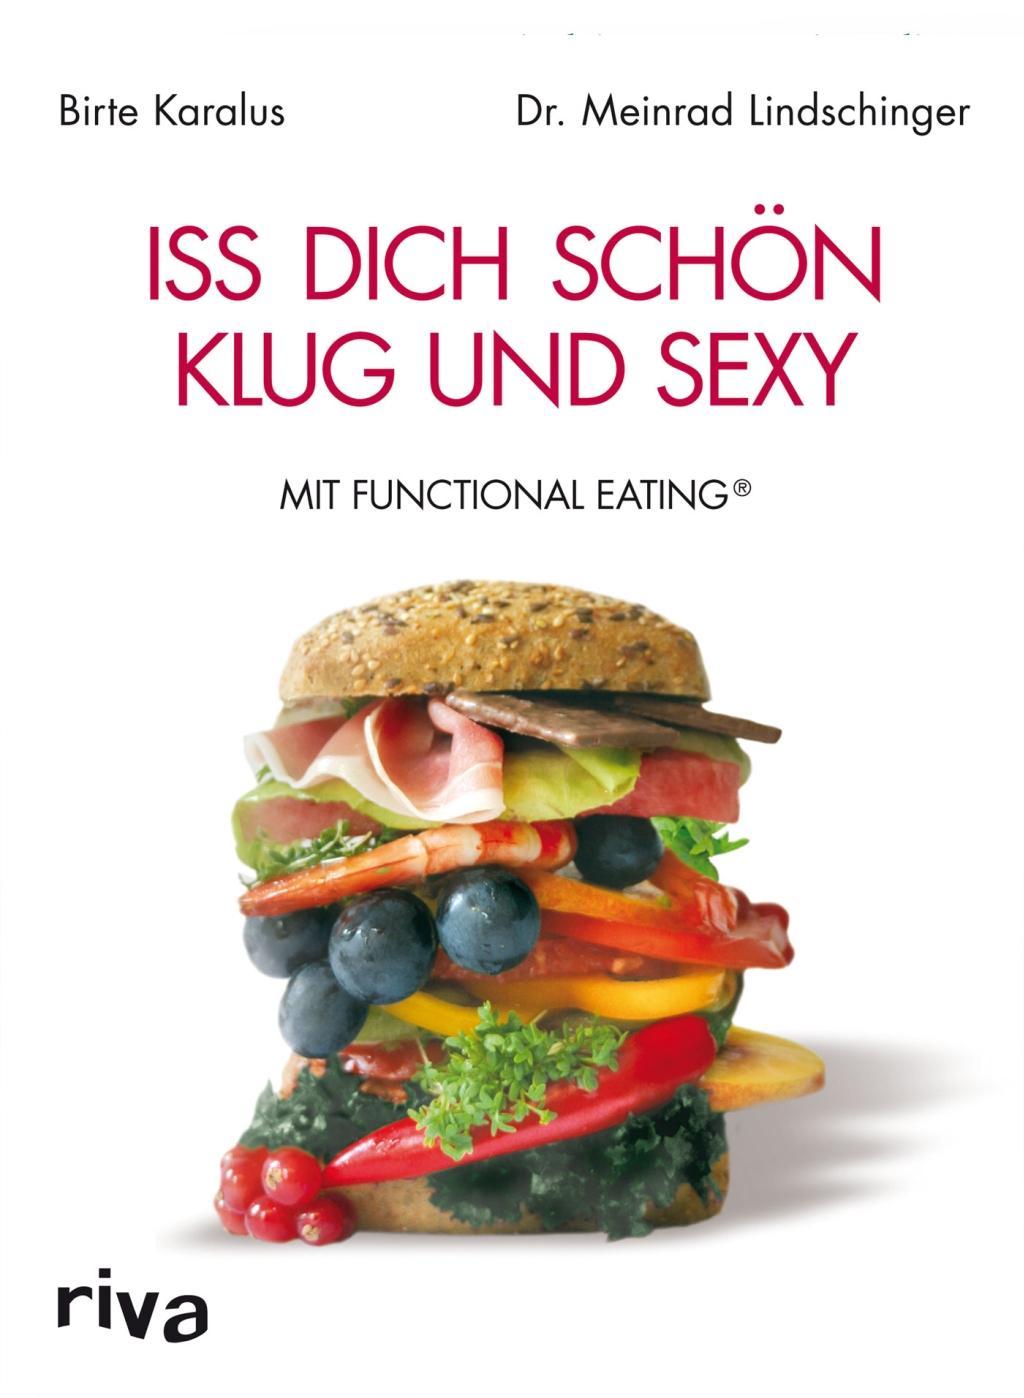 Iss dich schoen, klug und sexy mit Functional Eating - Birte Karalus|Dr. Meinrad Lindschinger